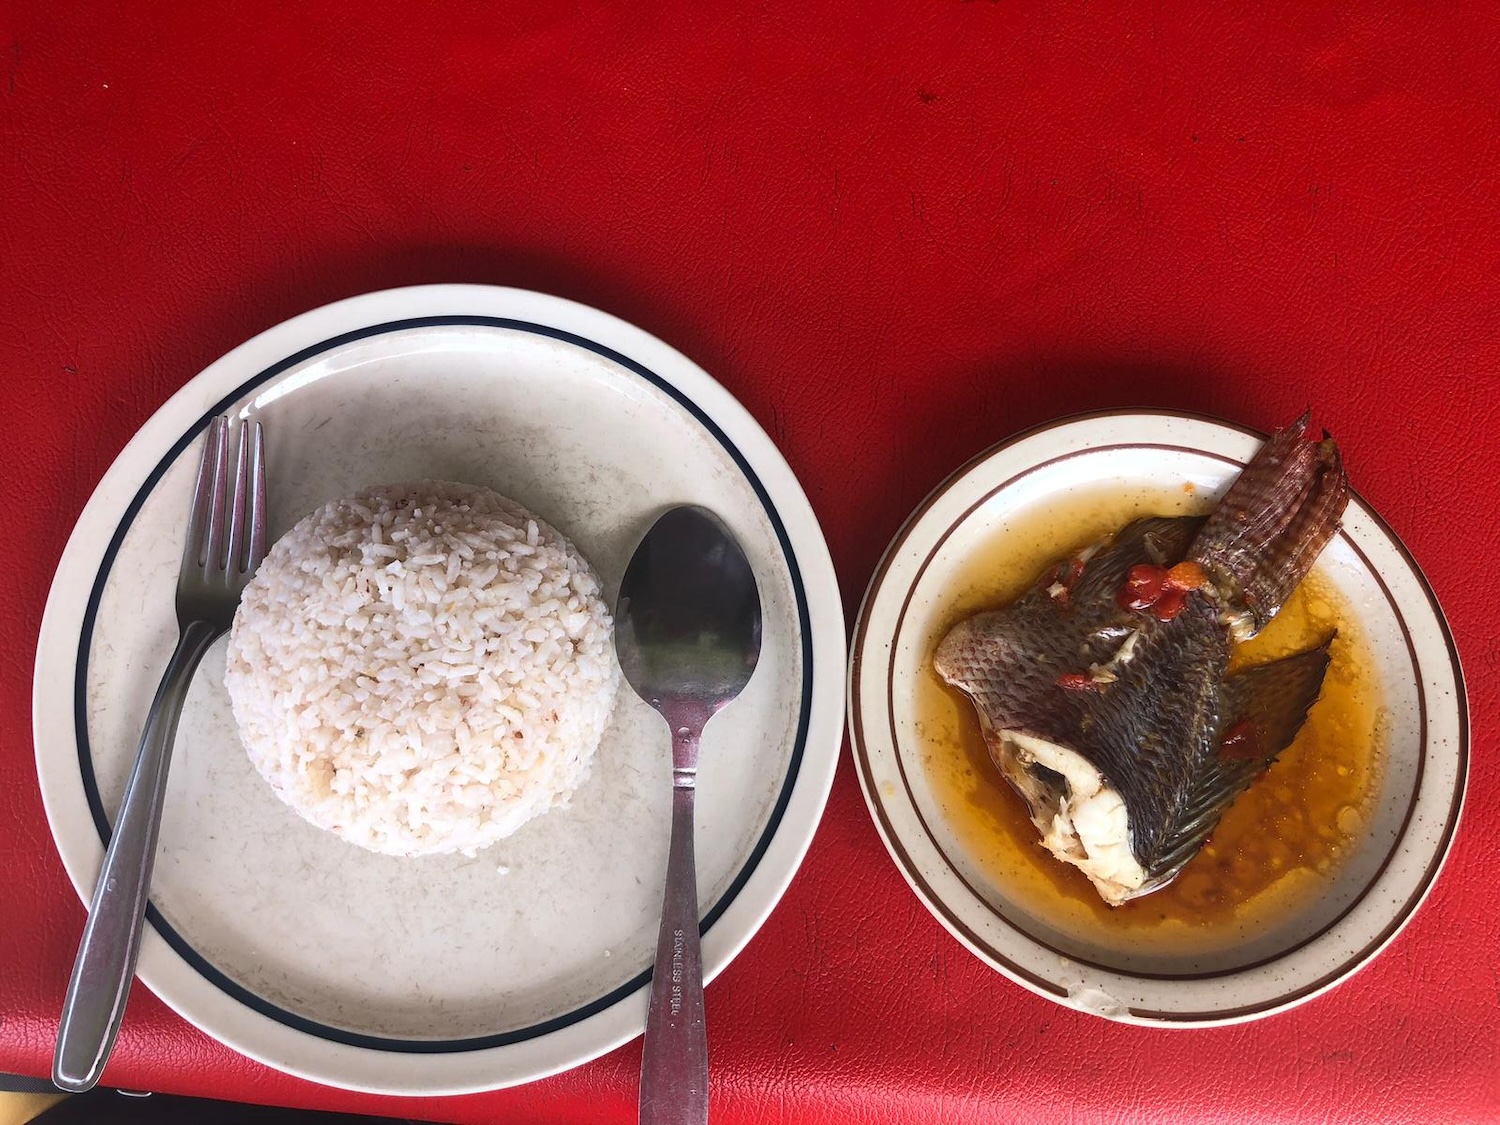 Ce plat appelé poisson à la sauce est un des plats servis chaque jour dans des milliers d’hotelys, les restaurants populaires de Madagascar © Globe Reporters